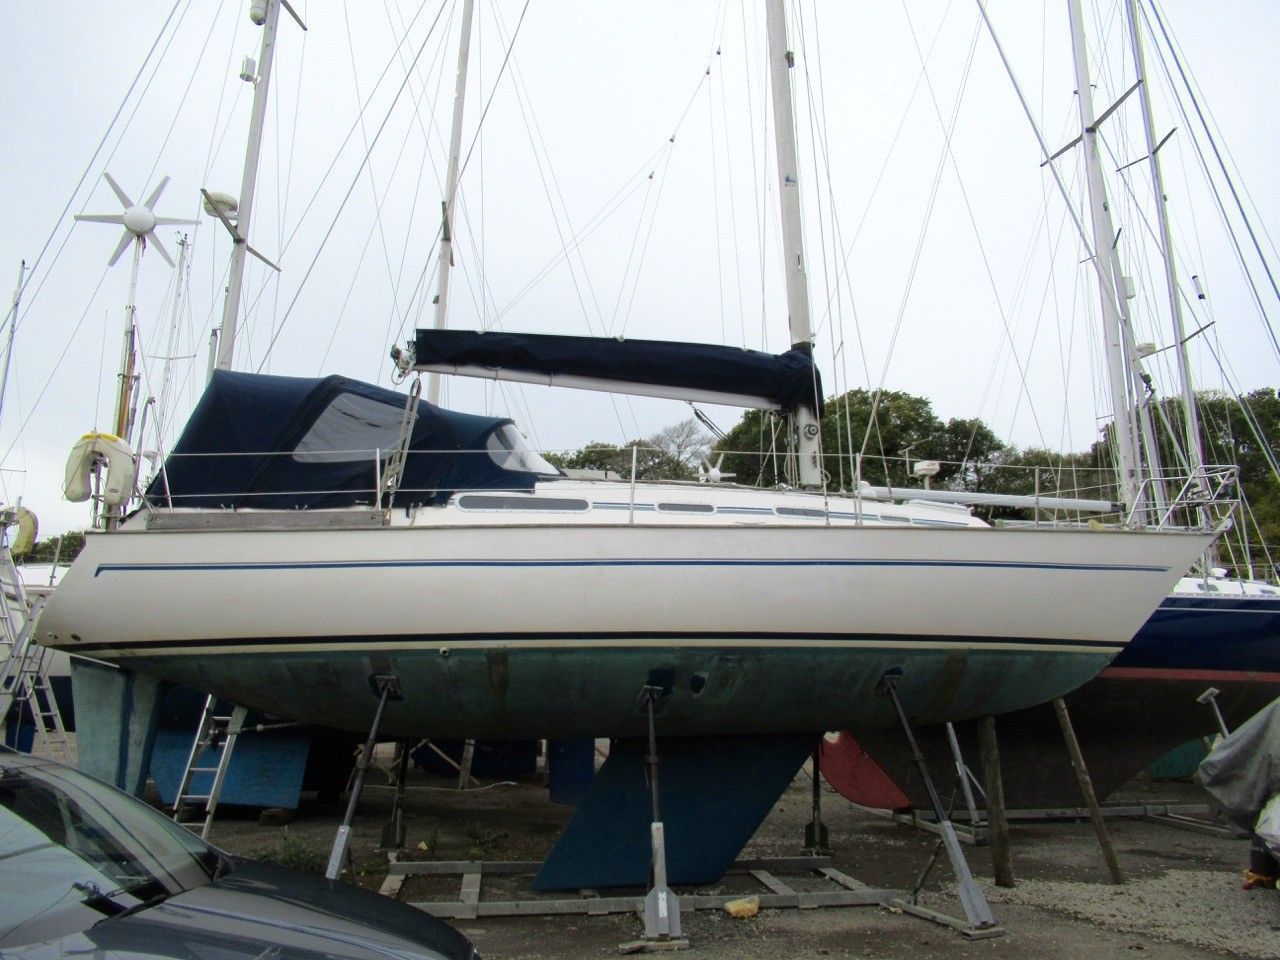 sadler yachts for sale uk